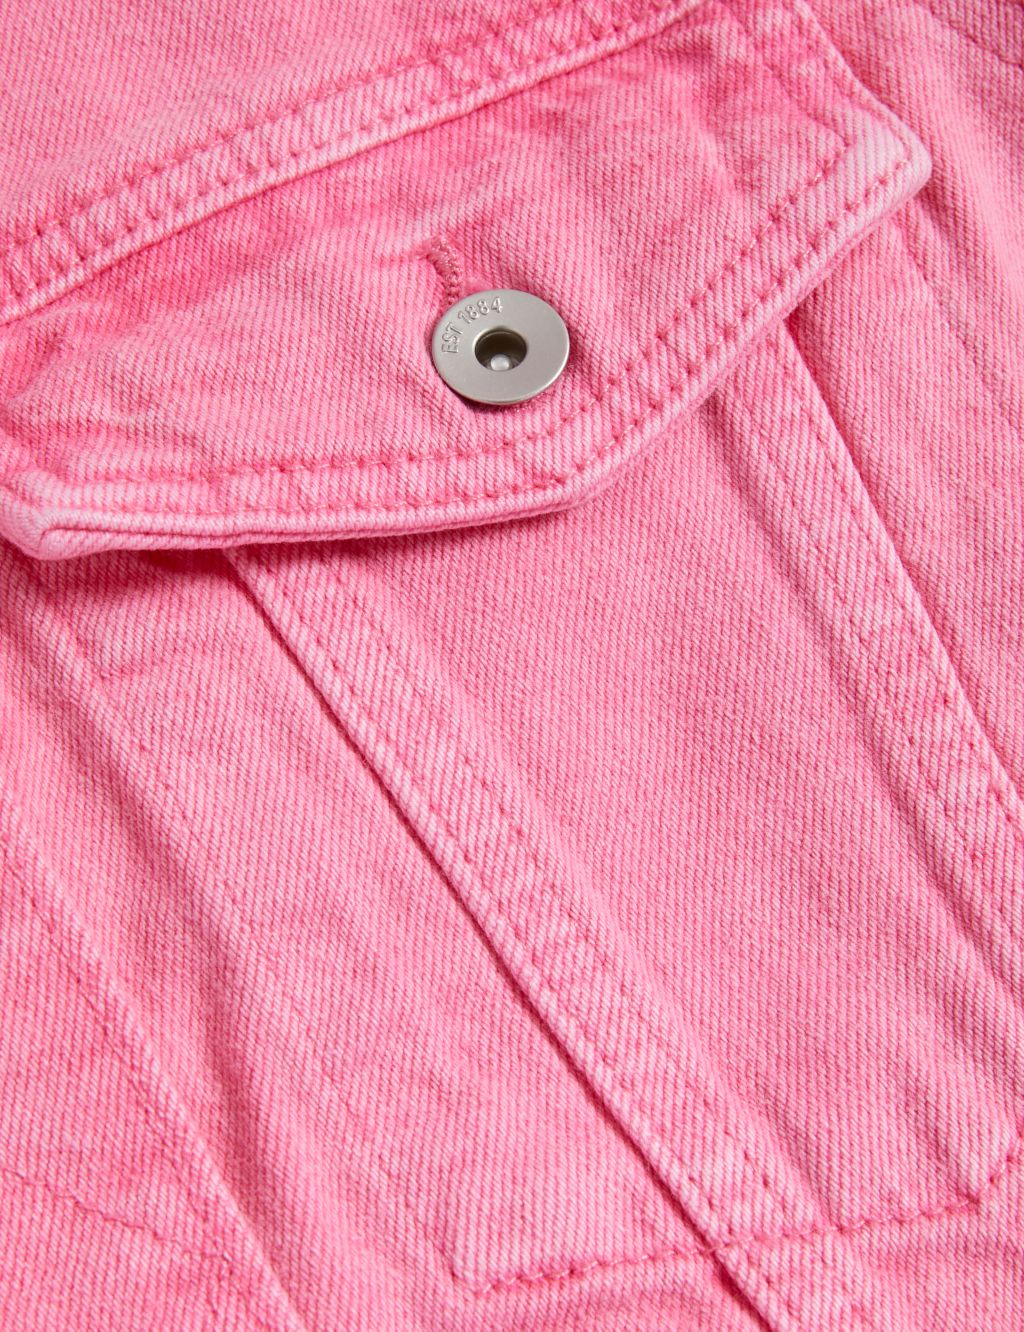 Pure Cotton Denim Jacket image 5